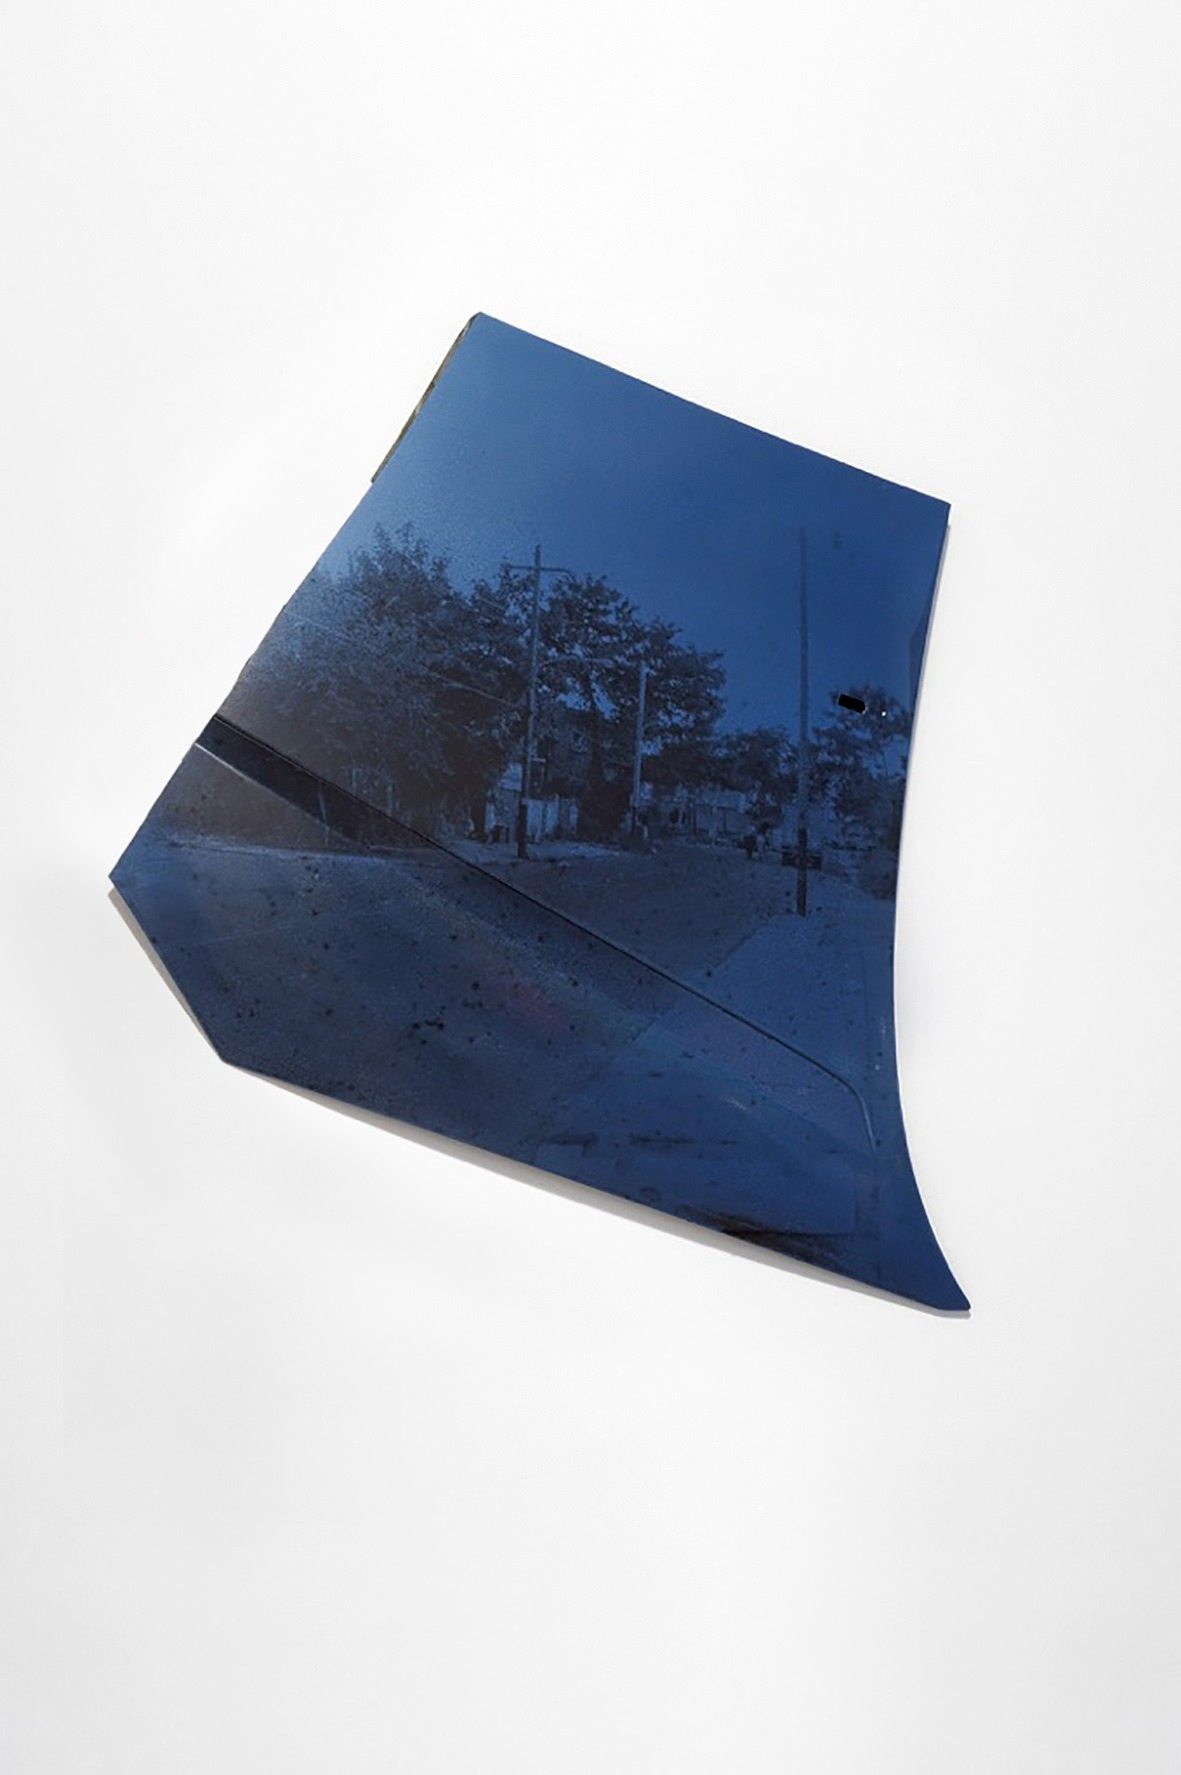 The Hood (2015), tirage photographique sur carrosserie de voiture. Détail de l’exposition La Vie moderne, Biennale d’art contemporain de Lyon, 2015.   